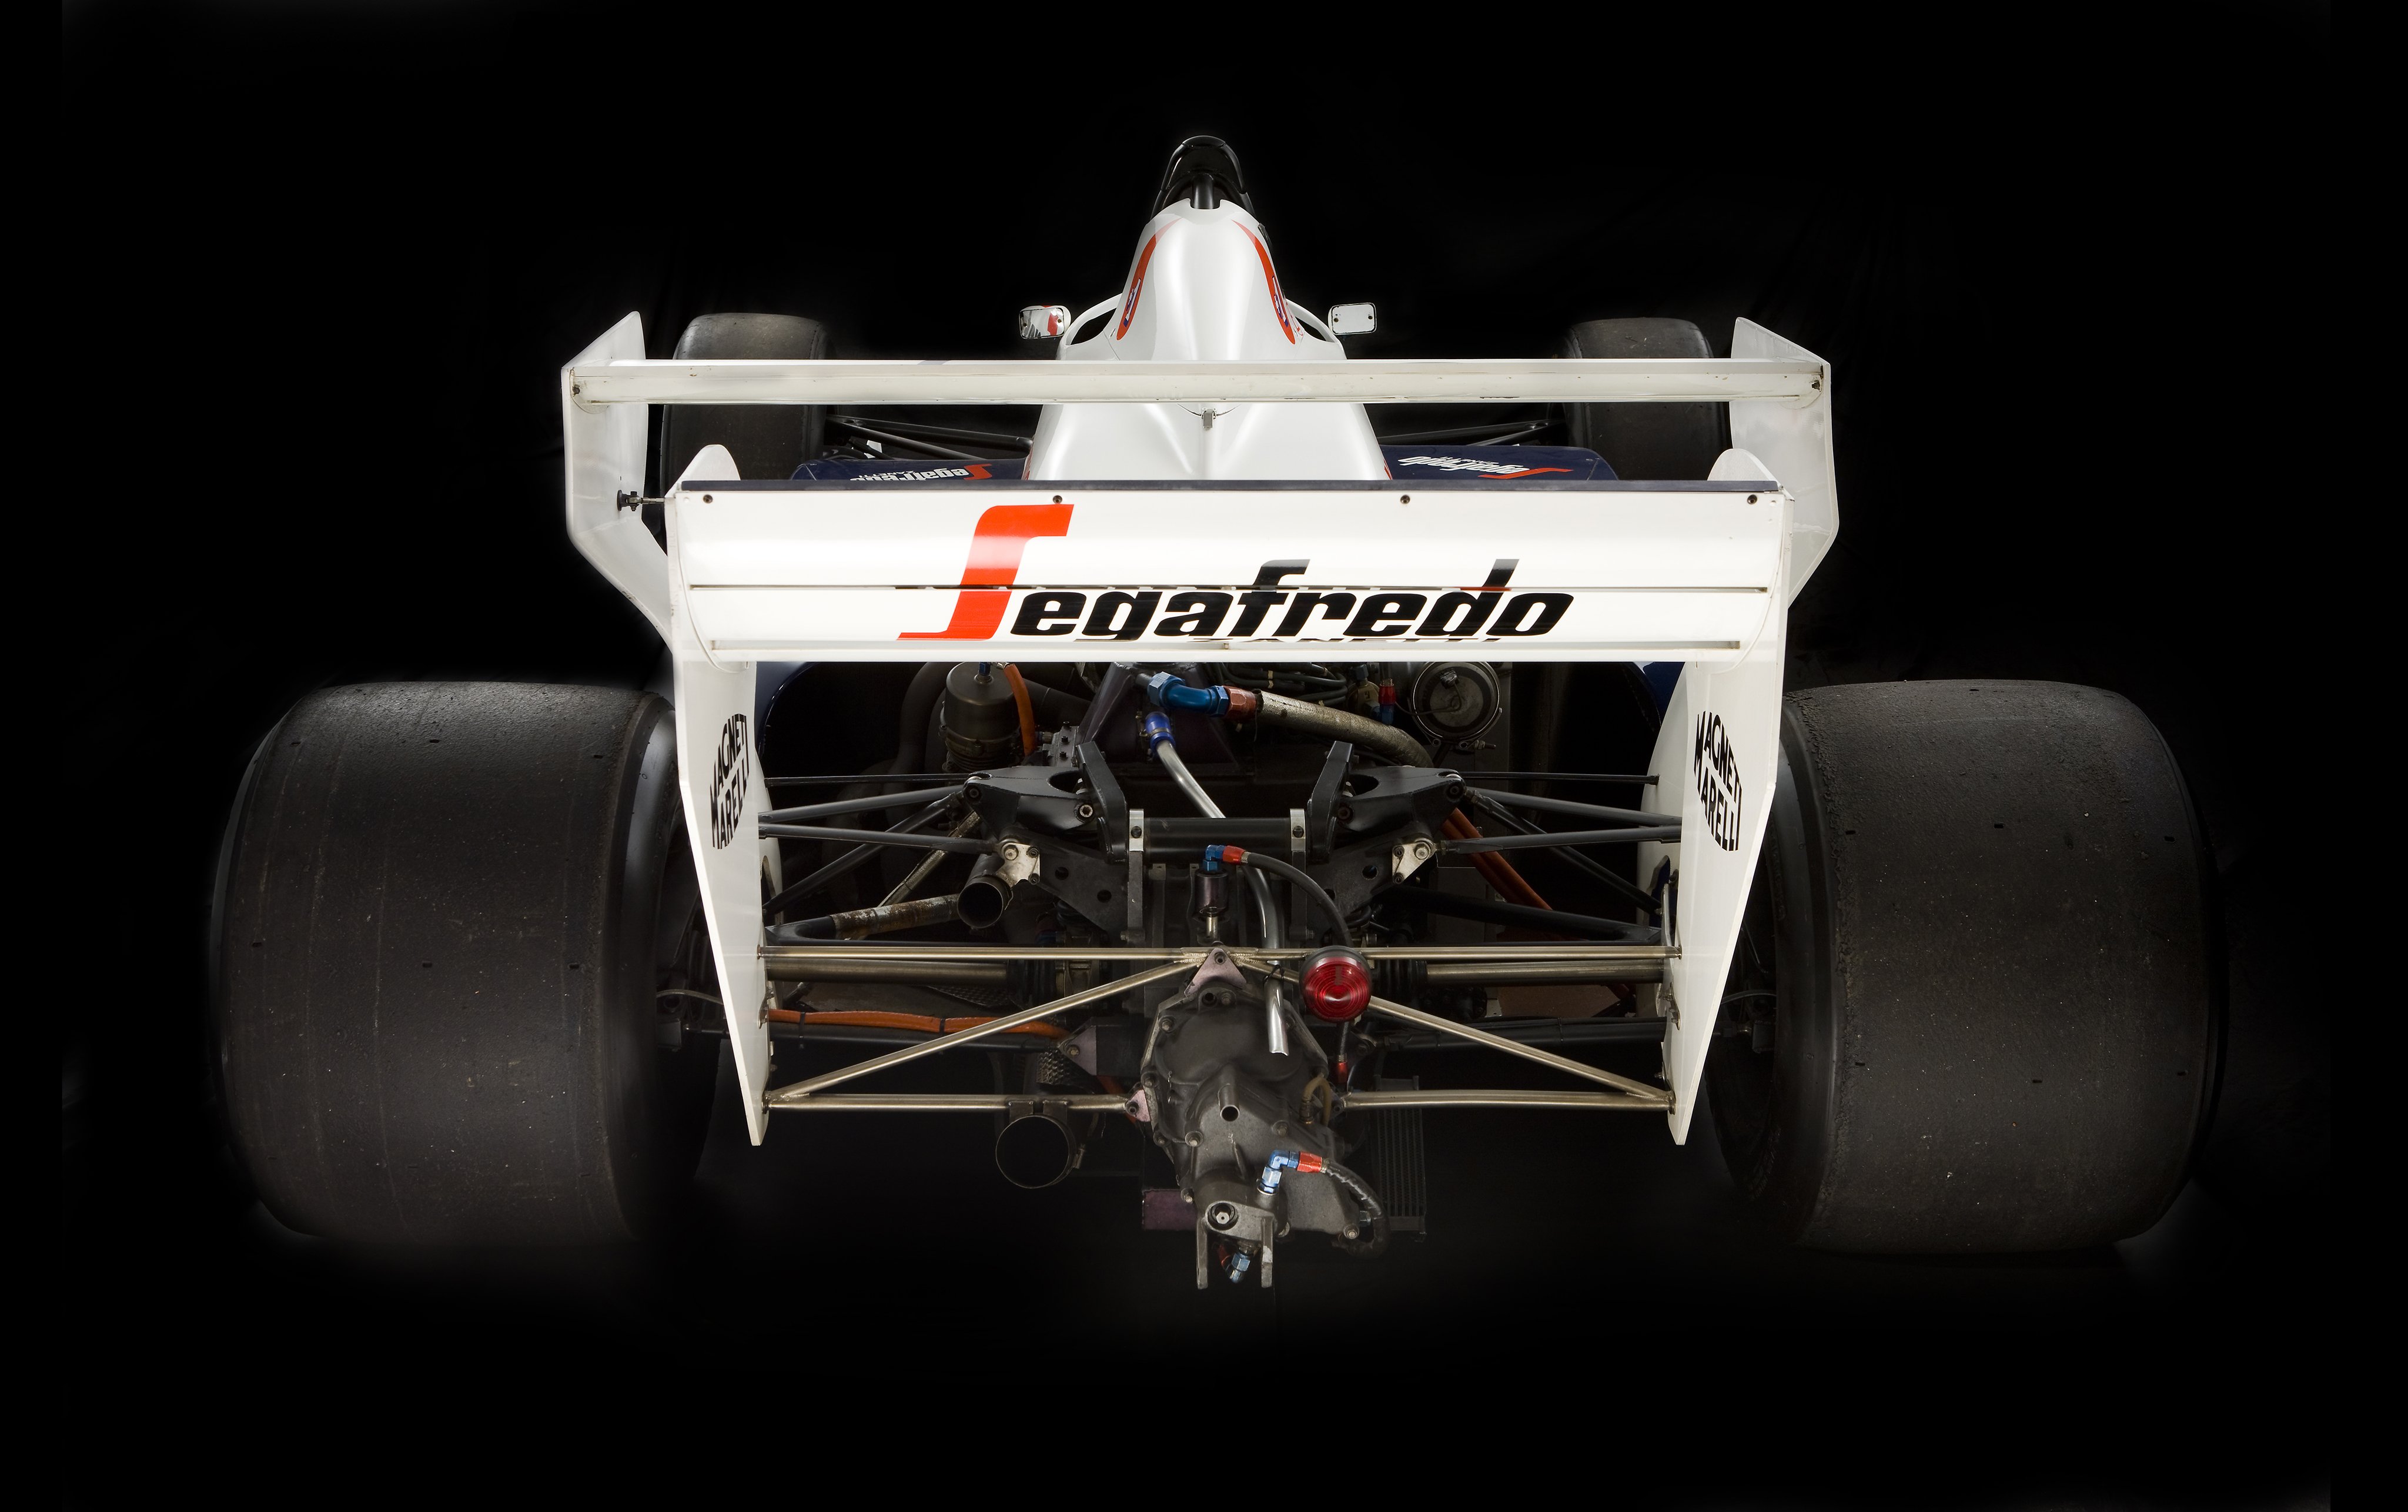 1984, Toleman, Tg184, F 1, Formula, Race, Racing Wallpaper